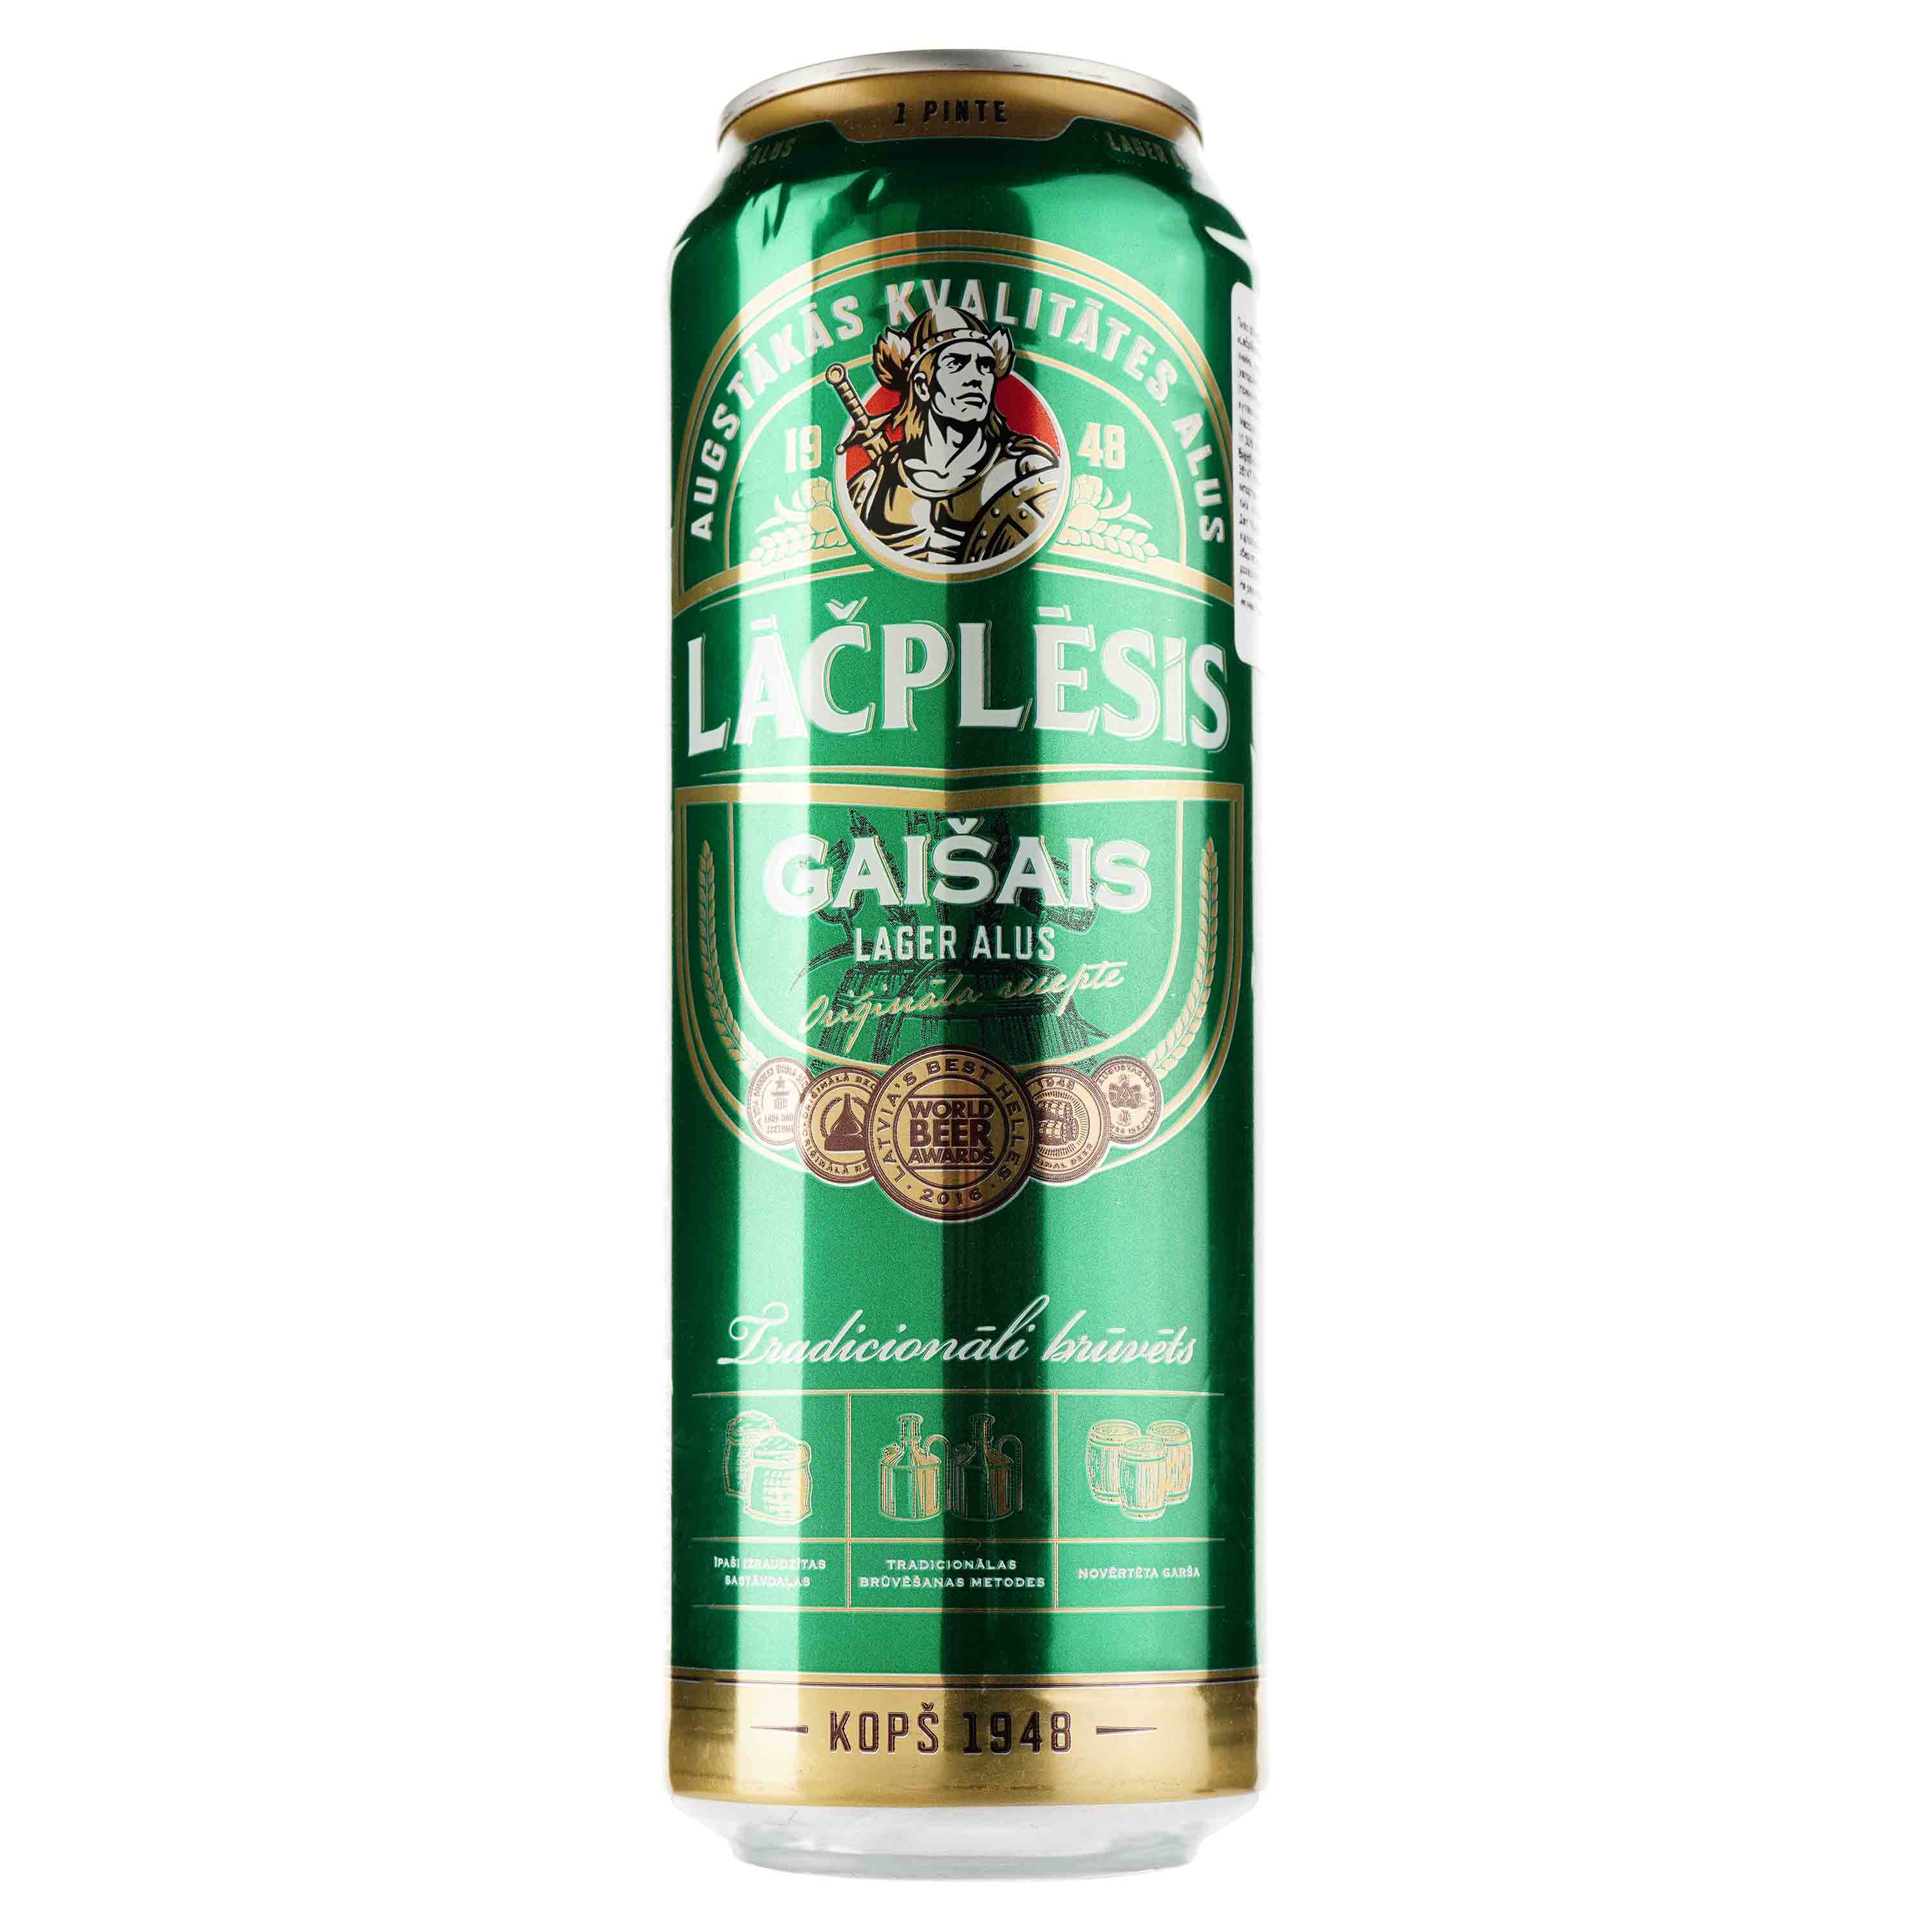 Пиво Lacplesis Gaisais светлое, 5%, ж/б, 0.568 л - фото 1